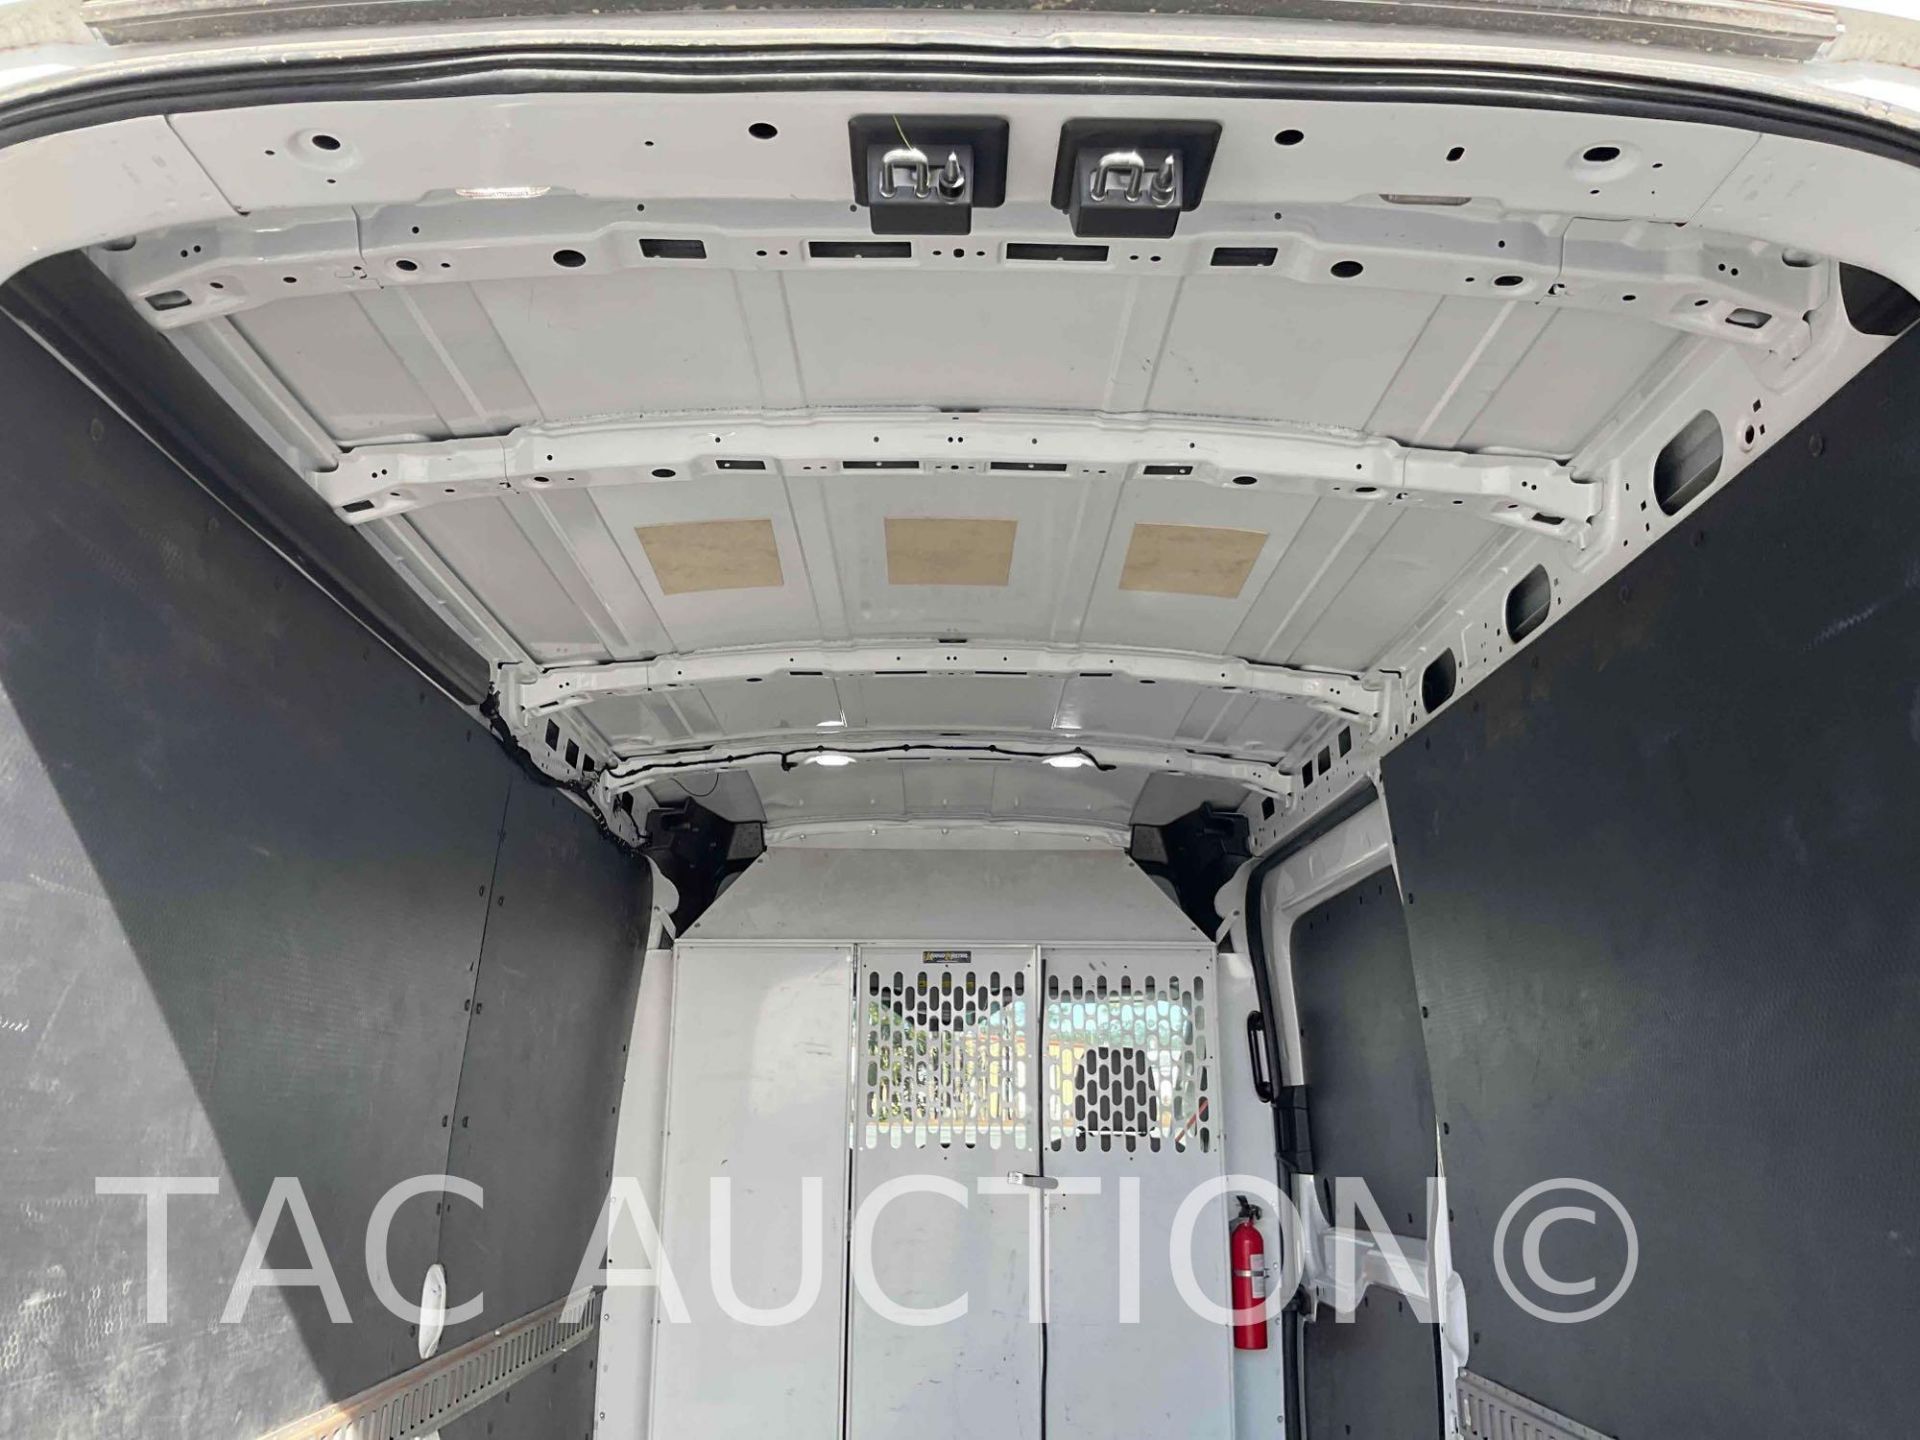 2019 Ford Transit 150 Cargo Van - Image 34 of 49